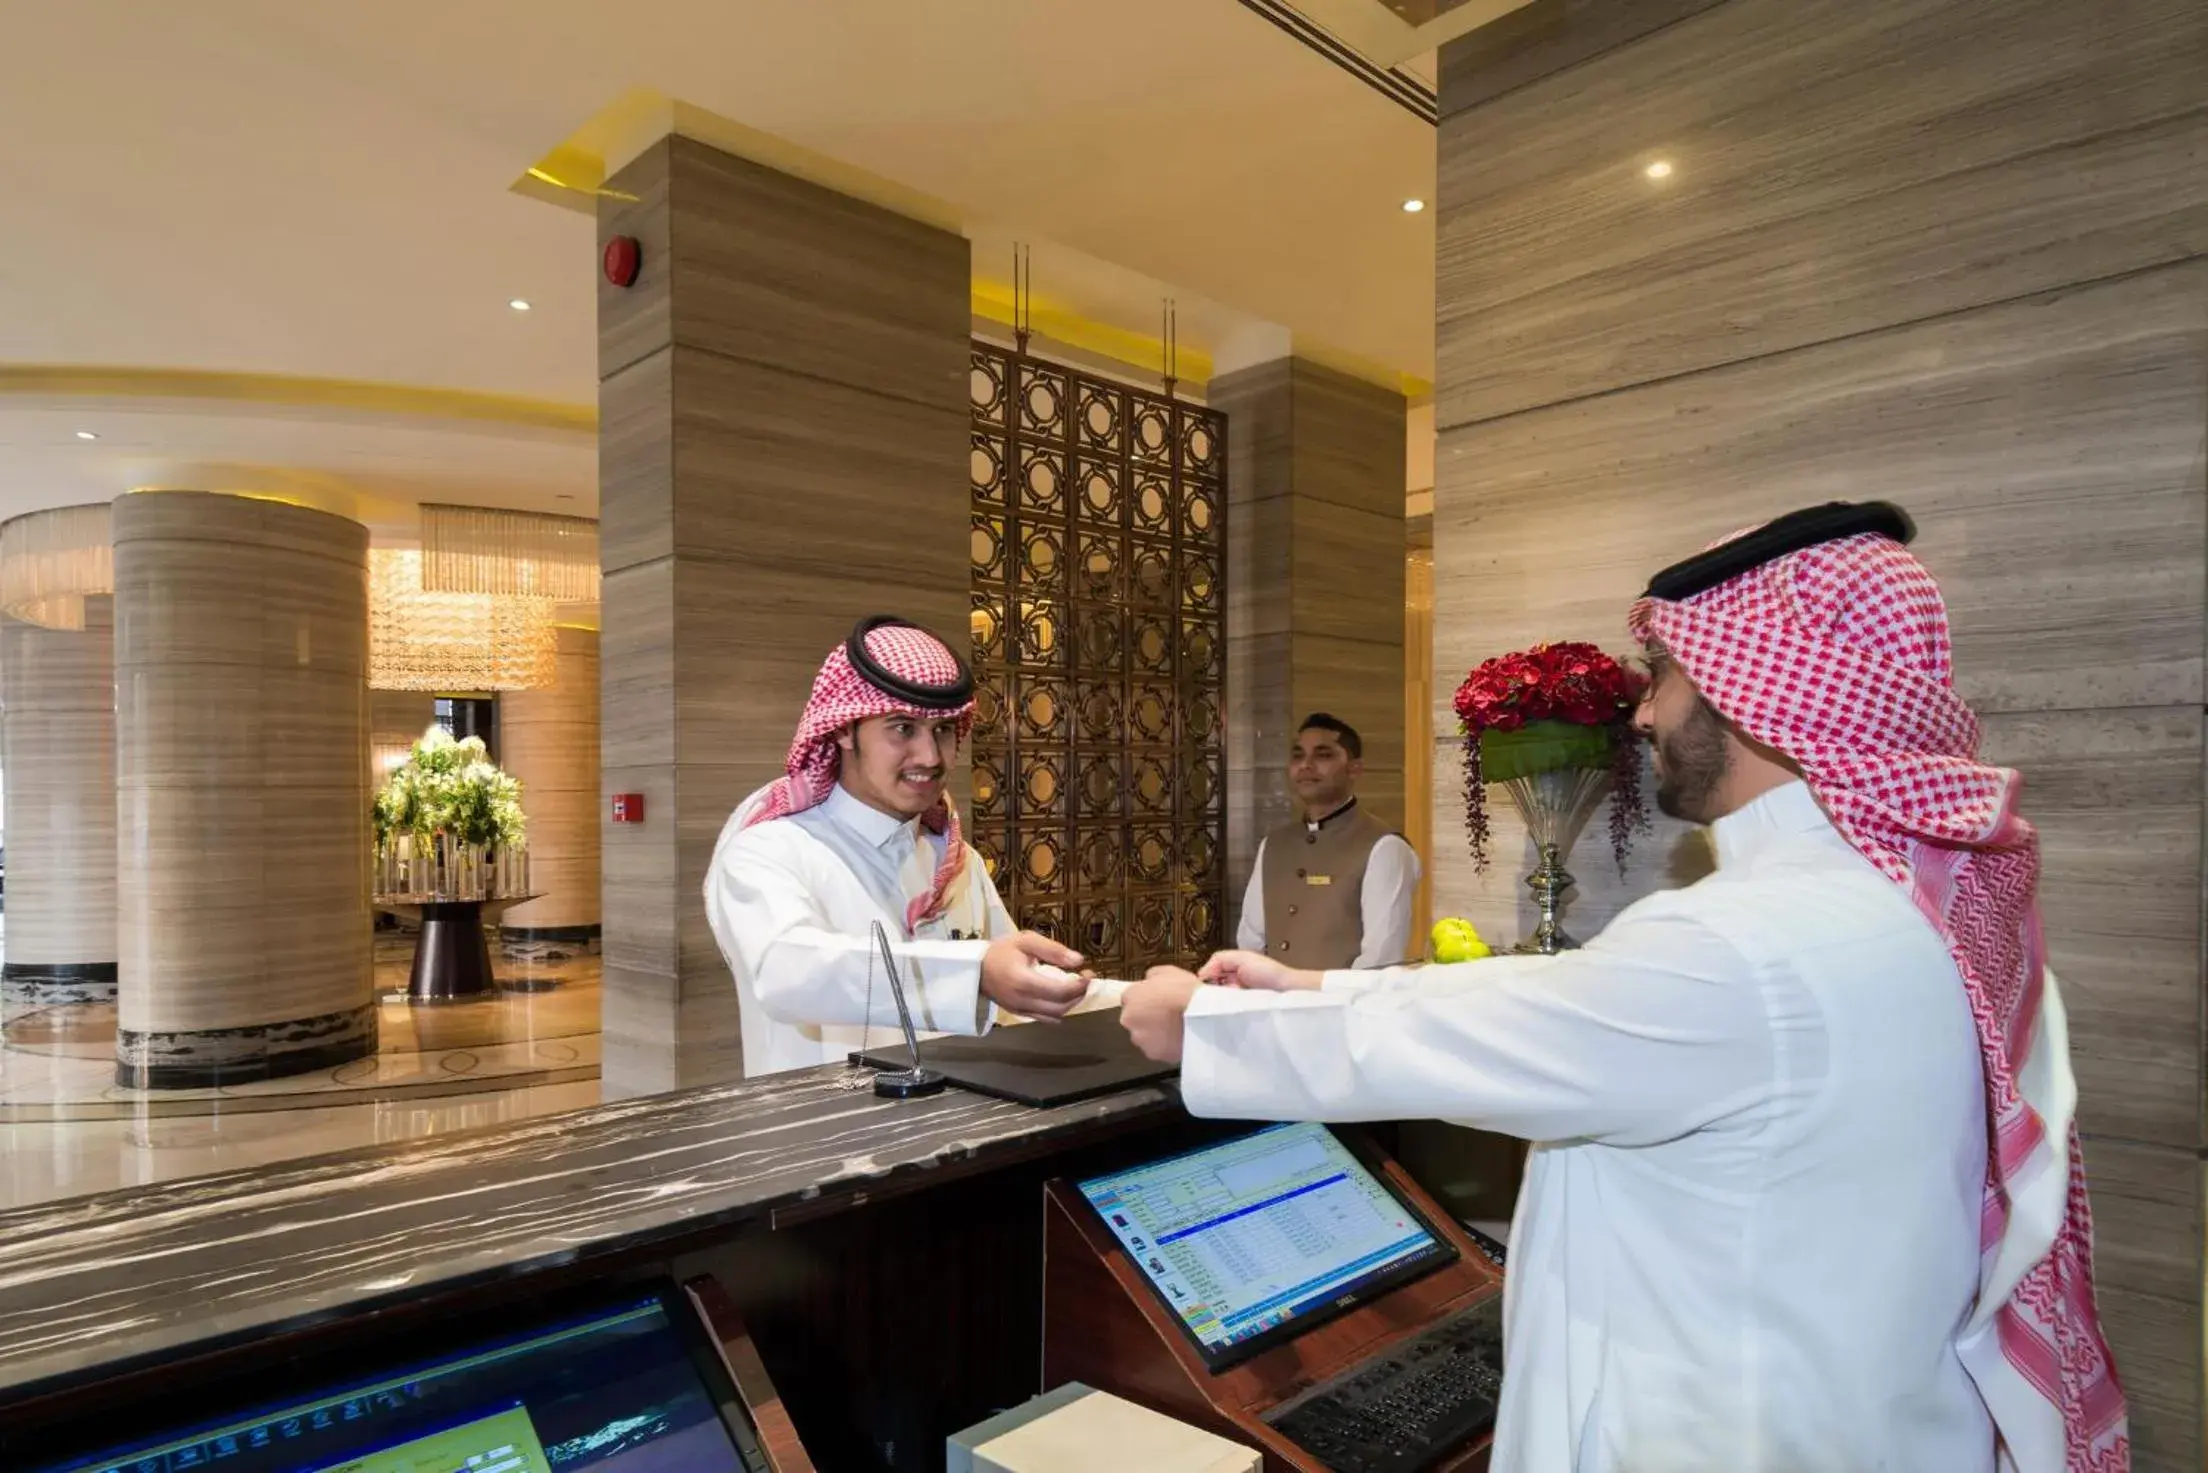 Lobby or reception in Boudl Al Qasr